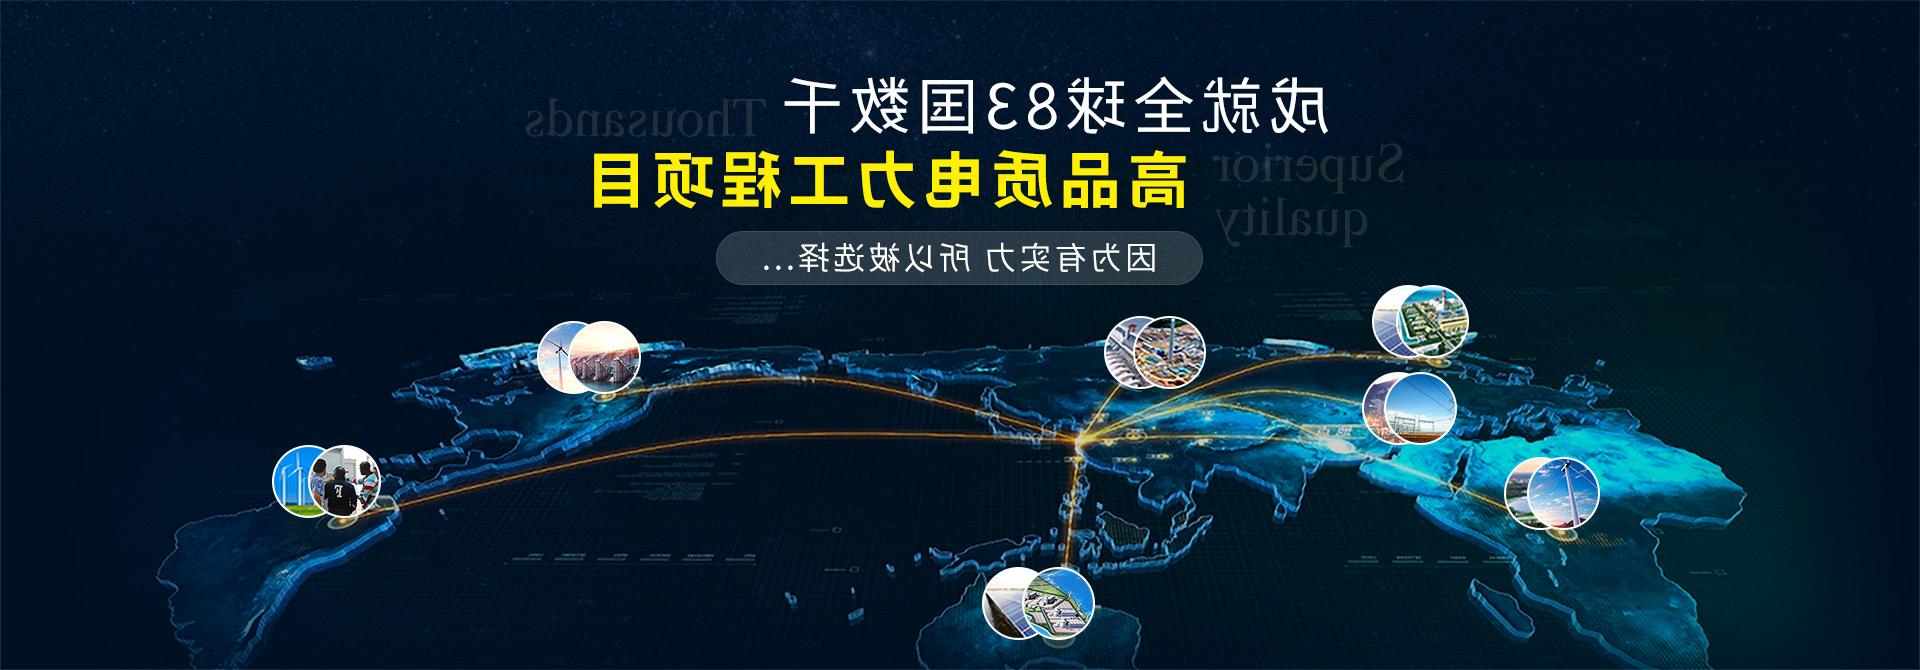 杭州继保电气集团深耕电力系统、微机保护保护装置及自动化领域